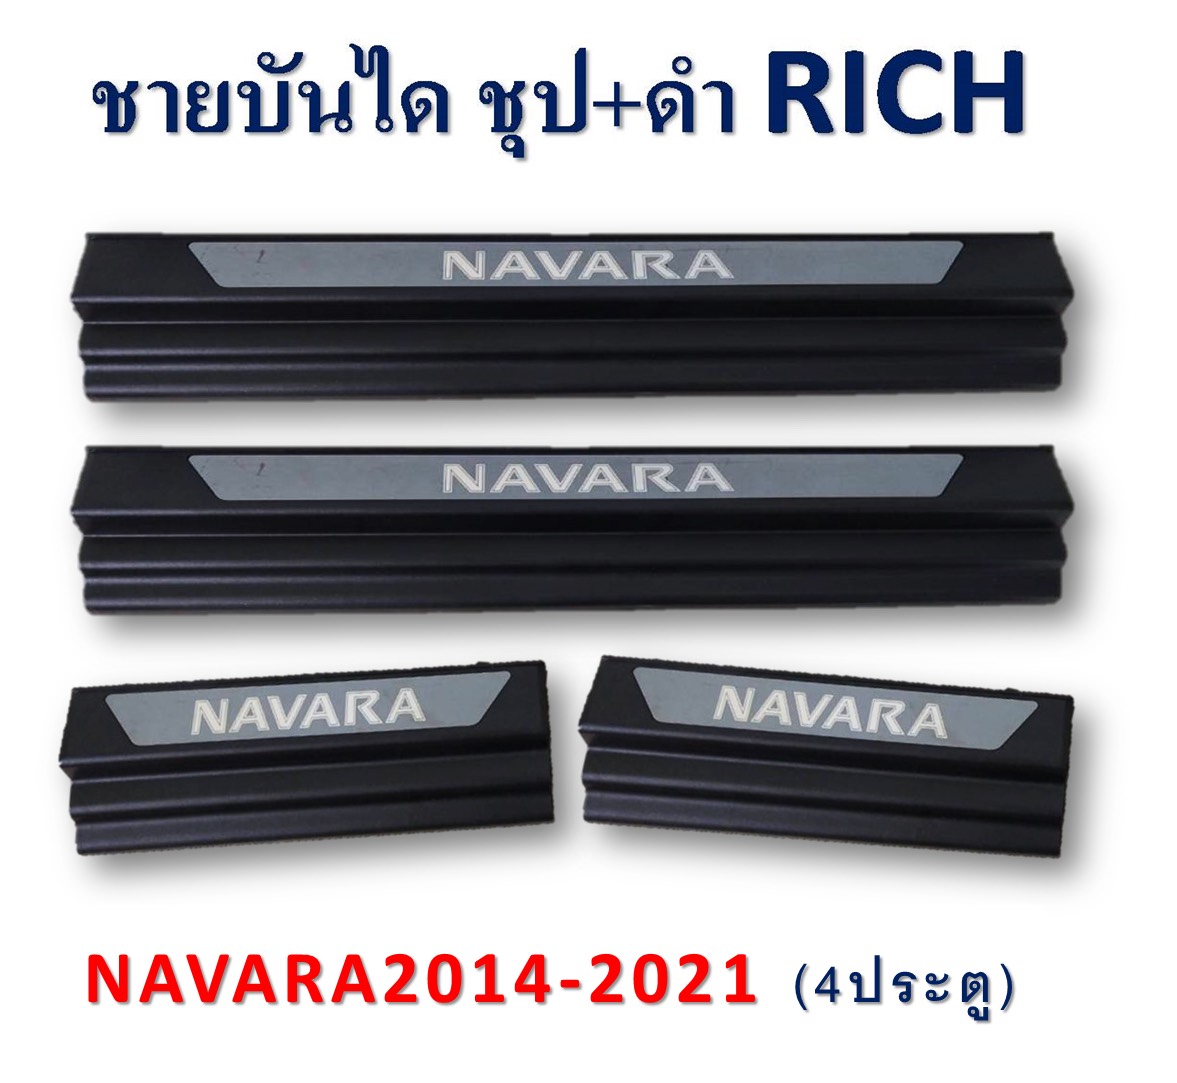 ชายบันได Navara2014-2021 ชุบ+ดำ 4ประตู